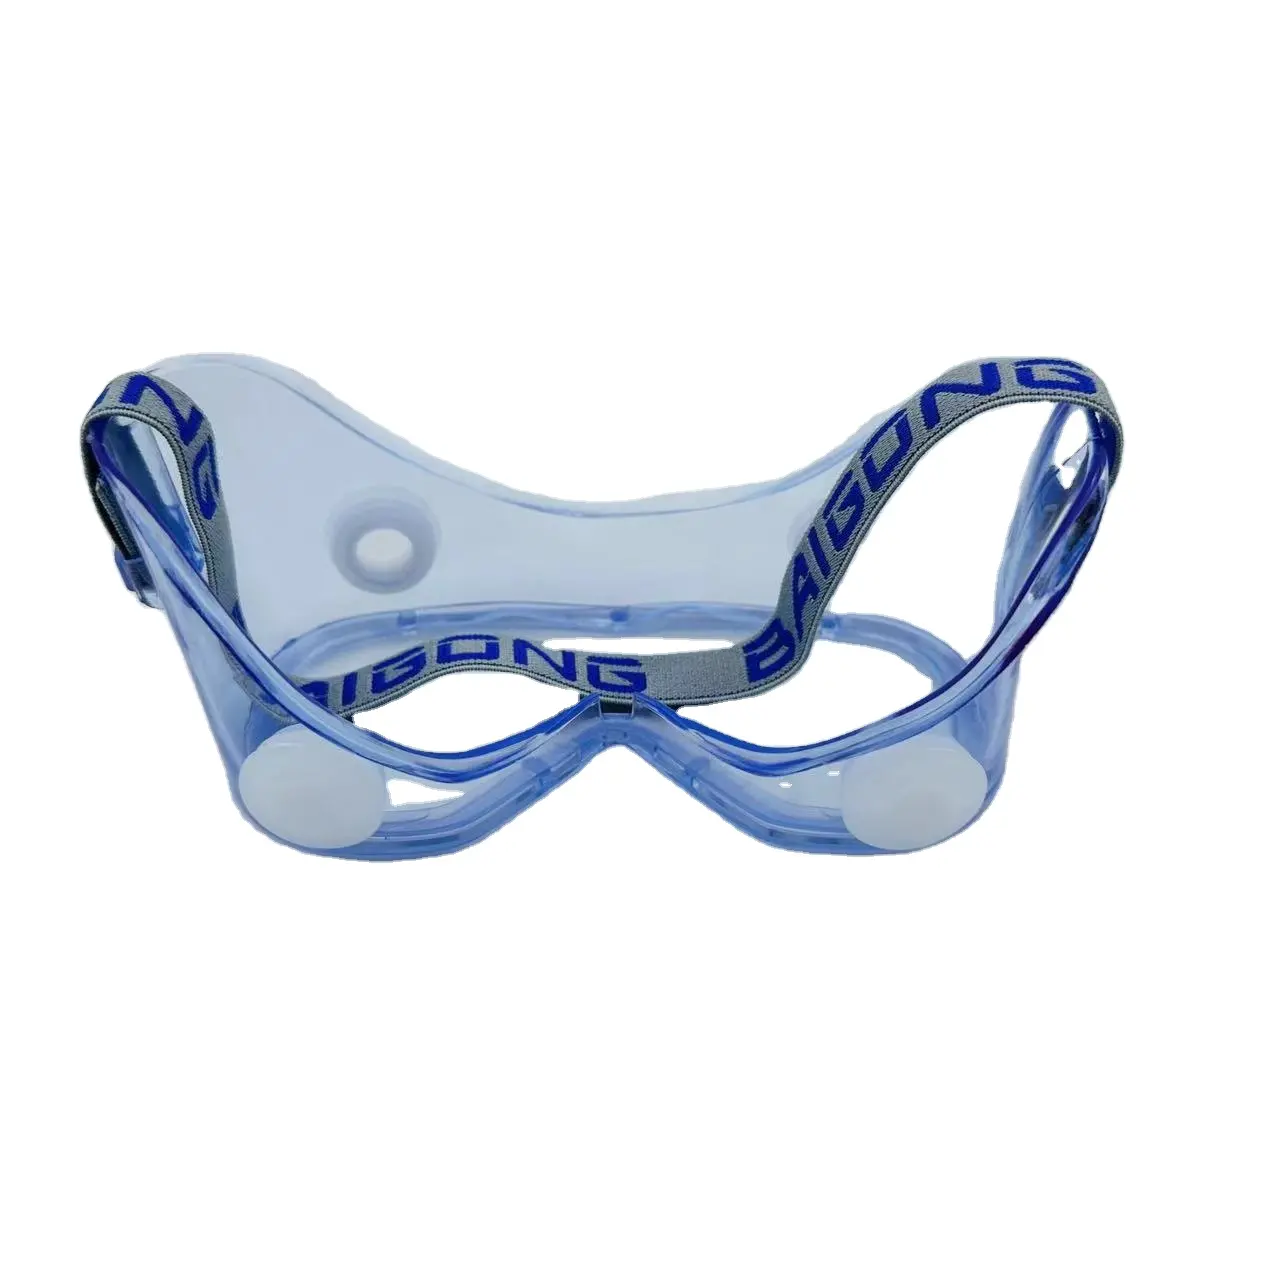 2023 Novo Lançado Roxo Anti-fog Óculos De Segurança com Free Air System óculos de natação com diopter